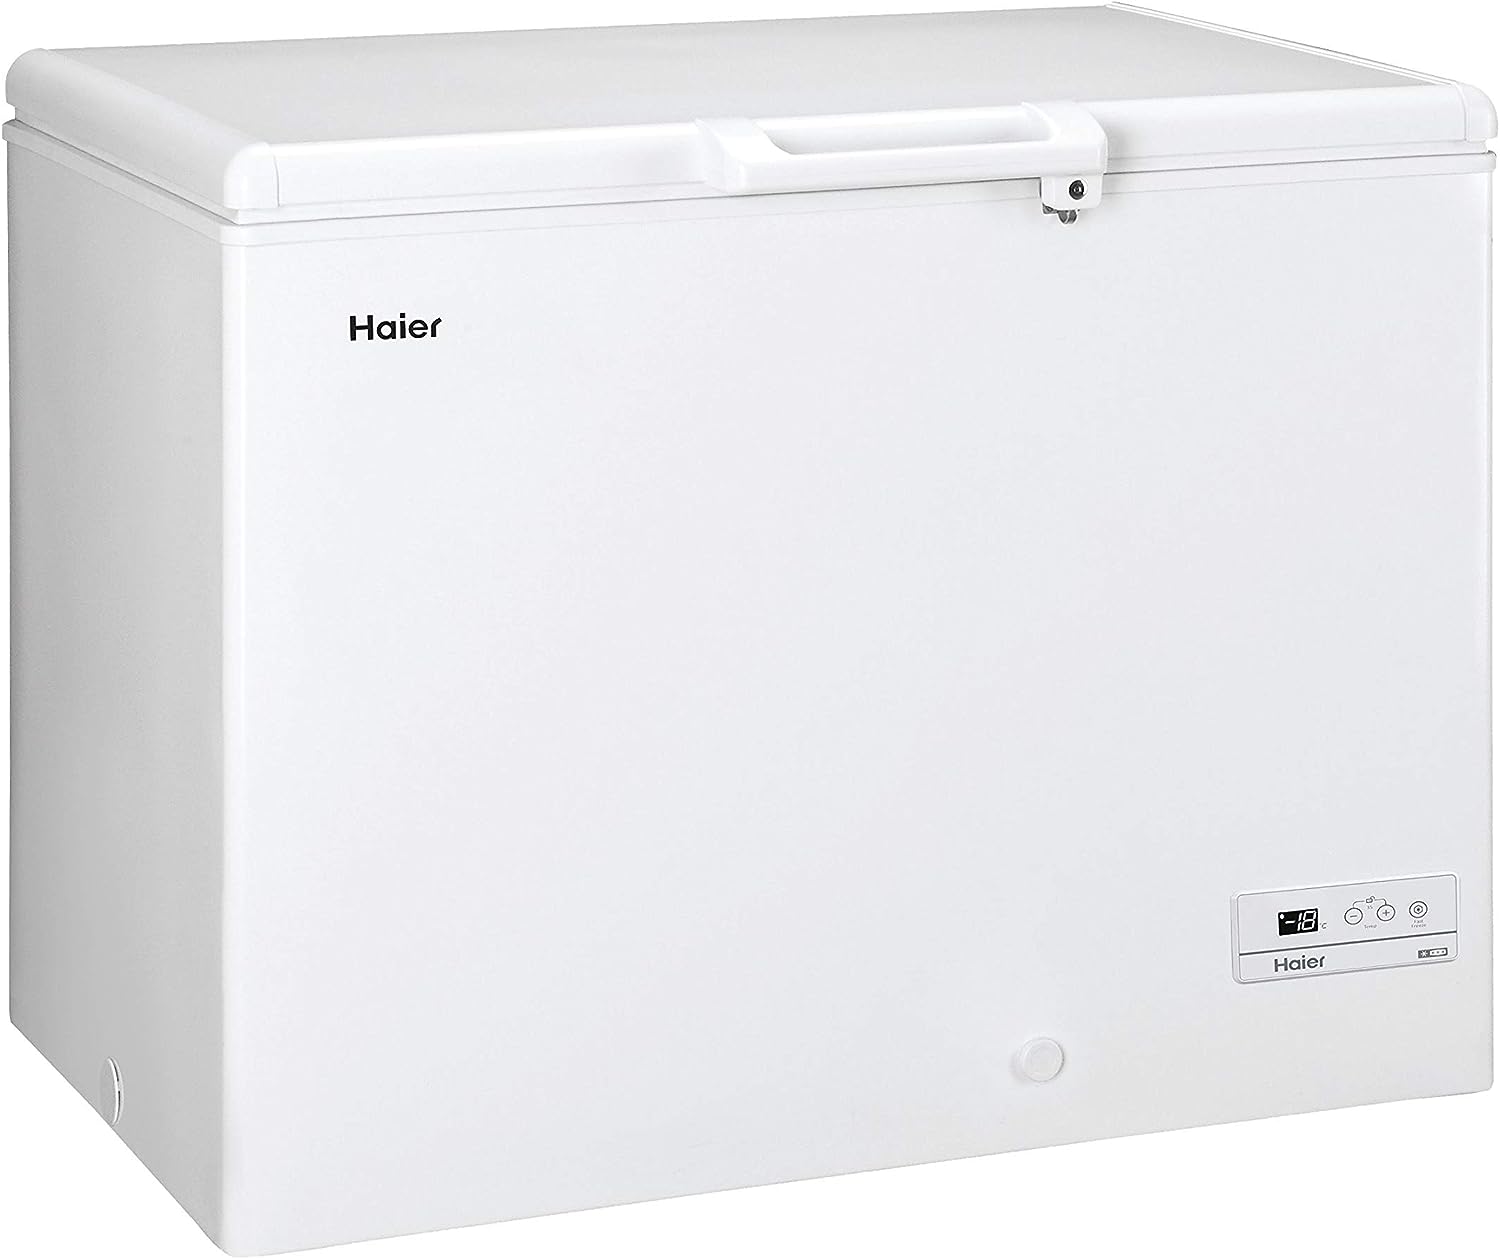 Haier HCE319F Congelatore Orizzontale a Pozzetto, 319 Litri, Temperatura Regolabile, Funzione Fast Freeze, Illuminazione Intera, Silenzioso, Libera Installazione, 110*74.5*84.5 cm, Bianco